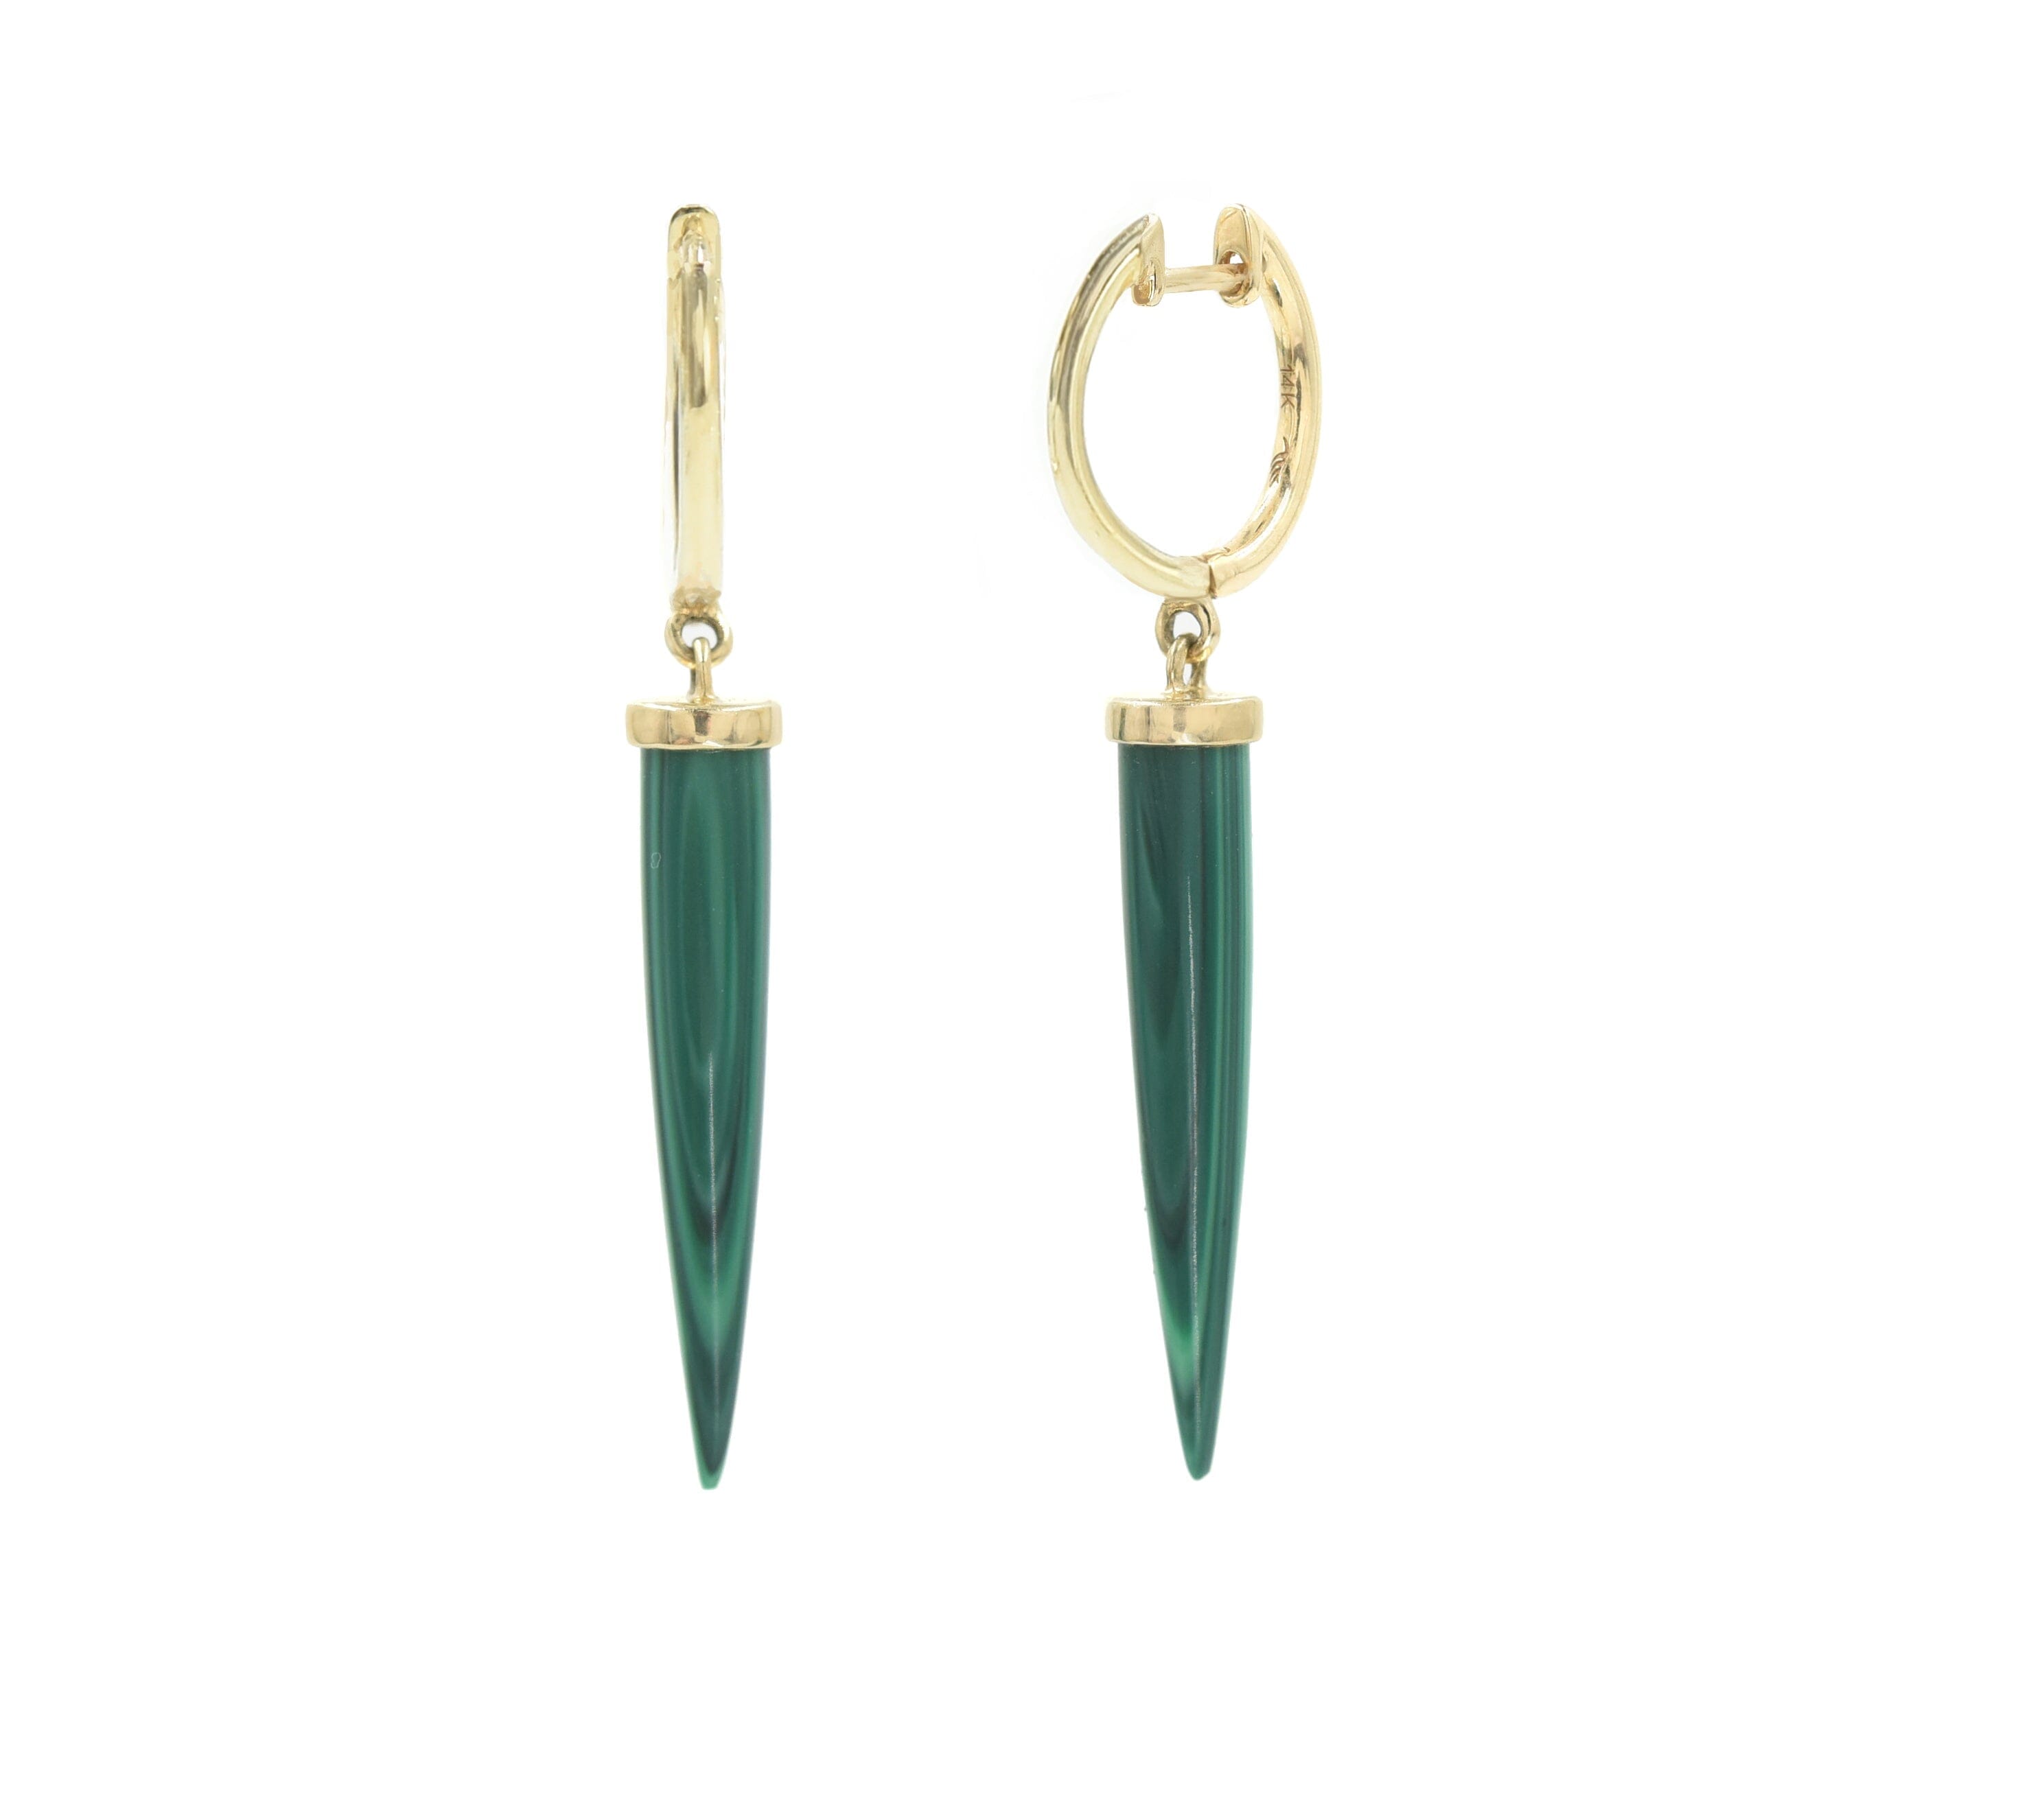 Aphrodite Spike Earrings Solid Gold x Malachite earrings - BONDEYE JEWELRY ®